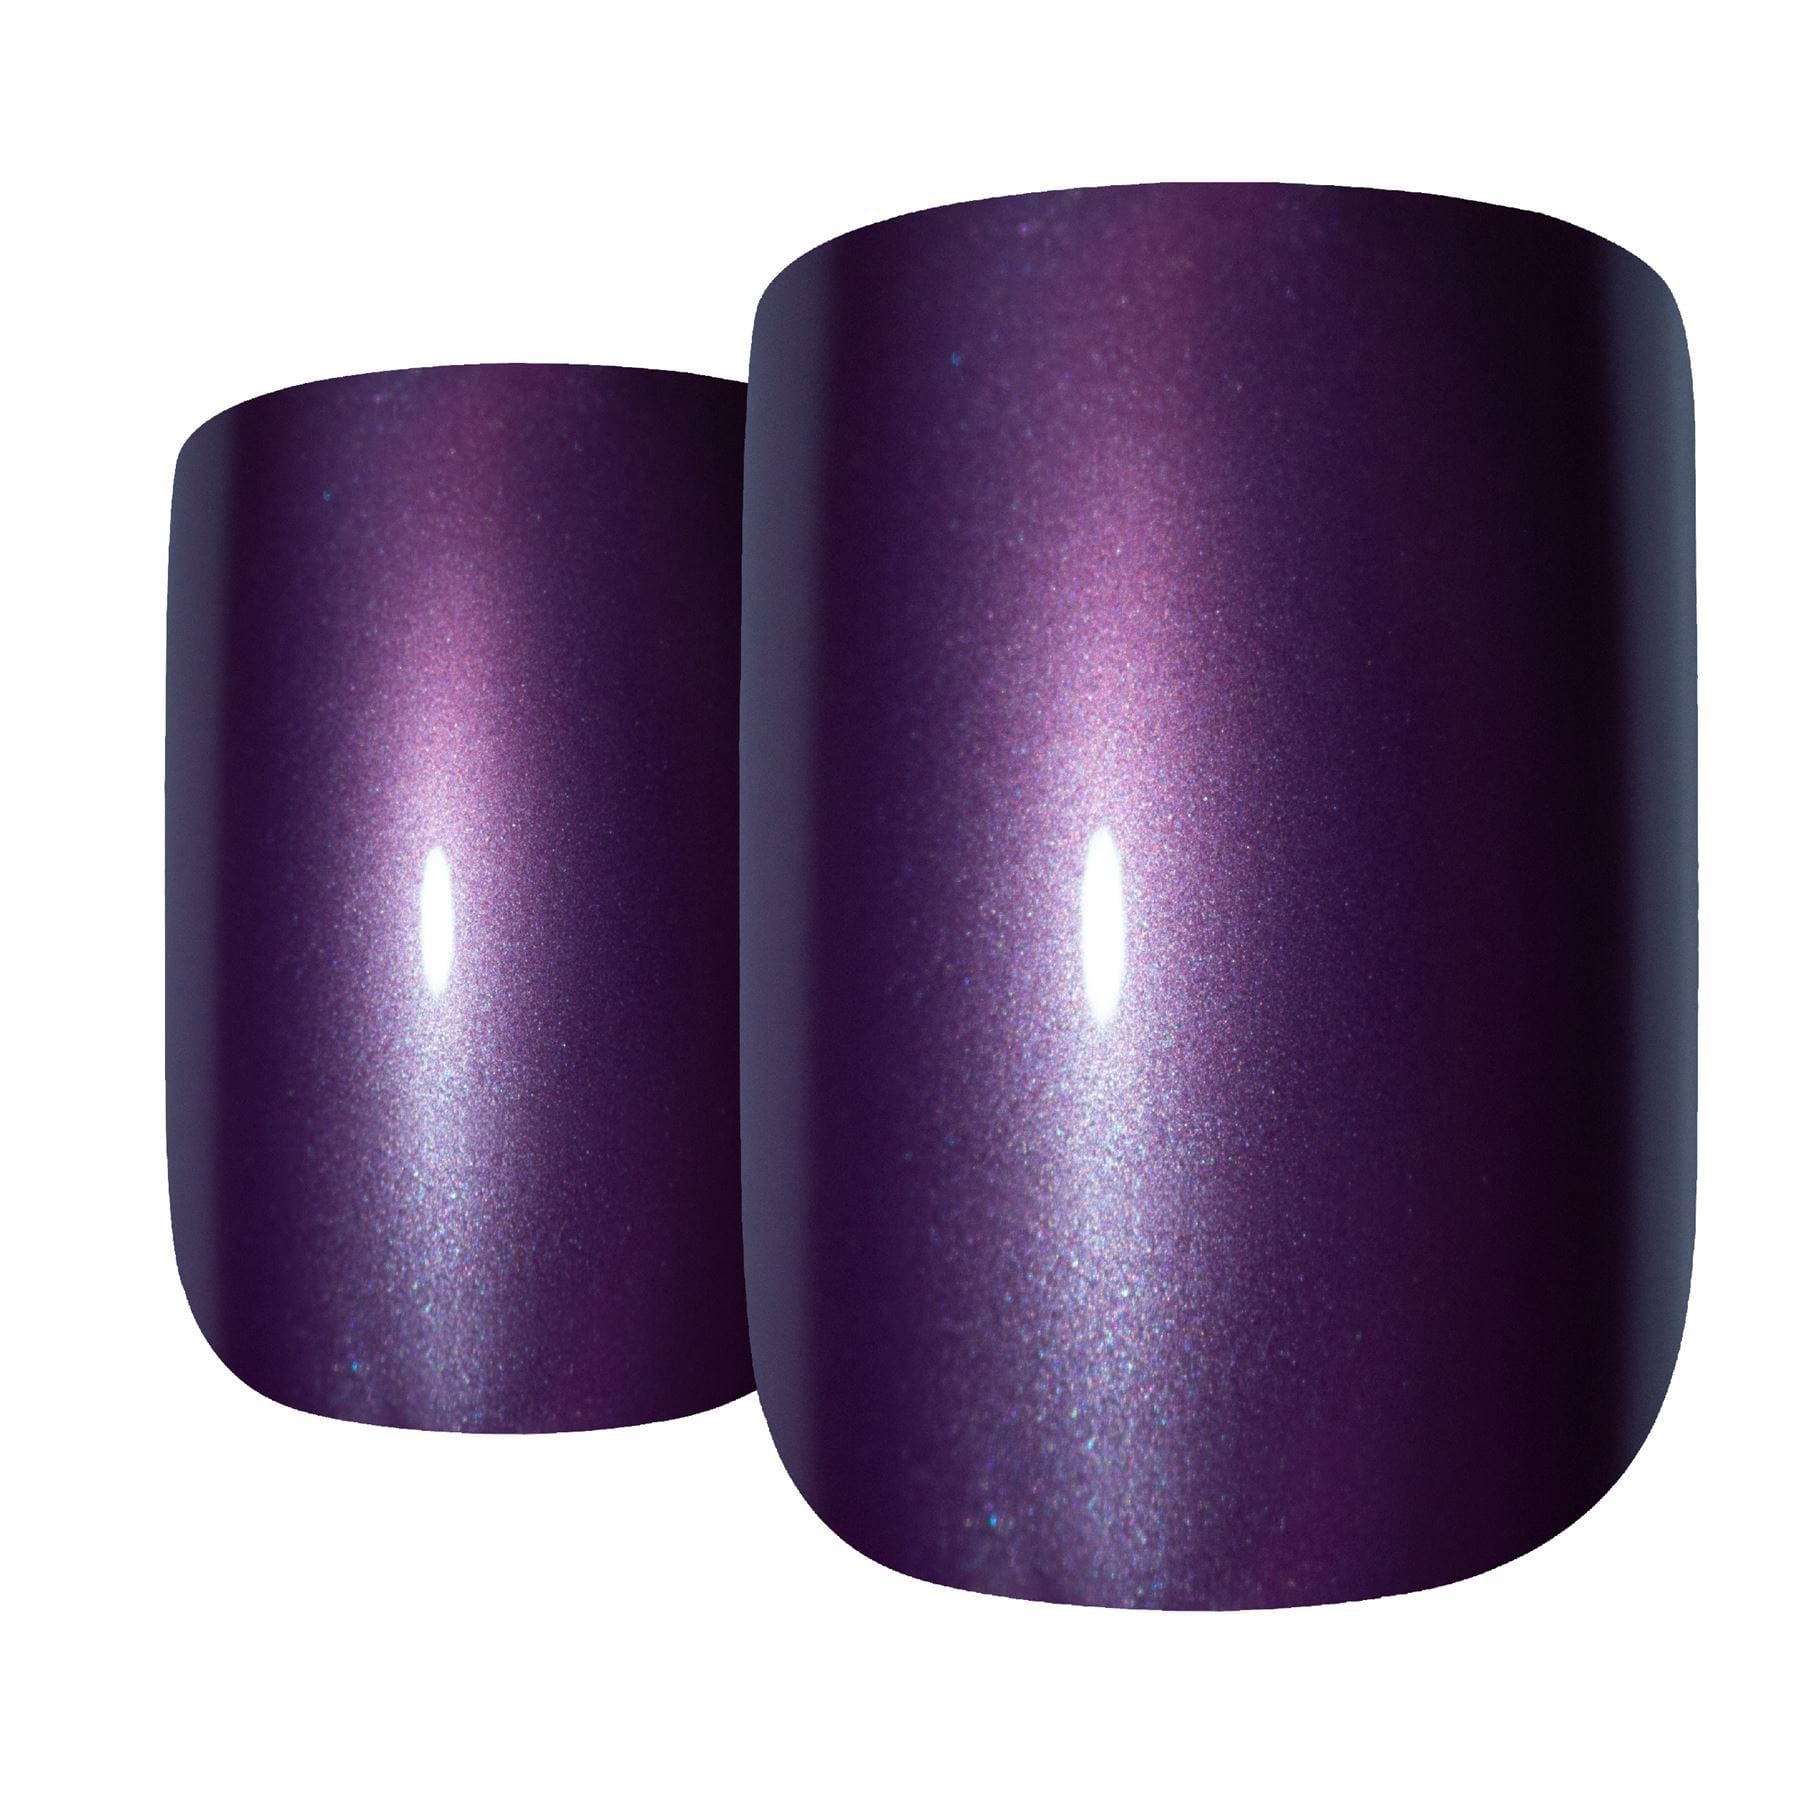 False Nails Bling Art Purple Acrylic French Manicure Fake Medium Tips with Glue